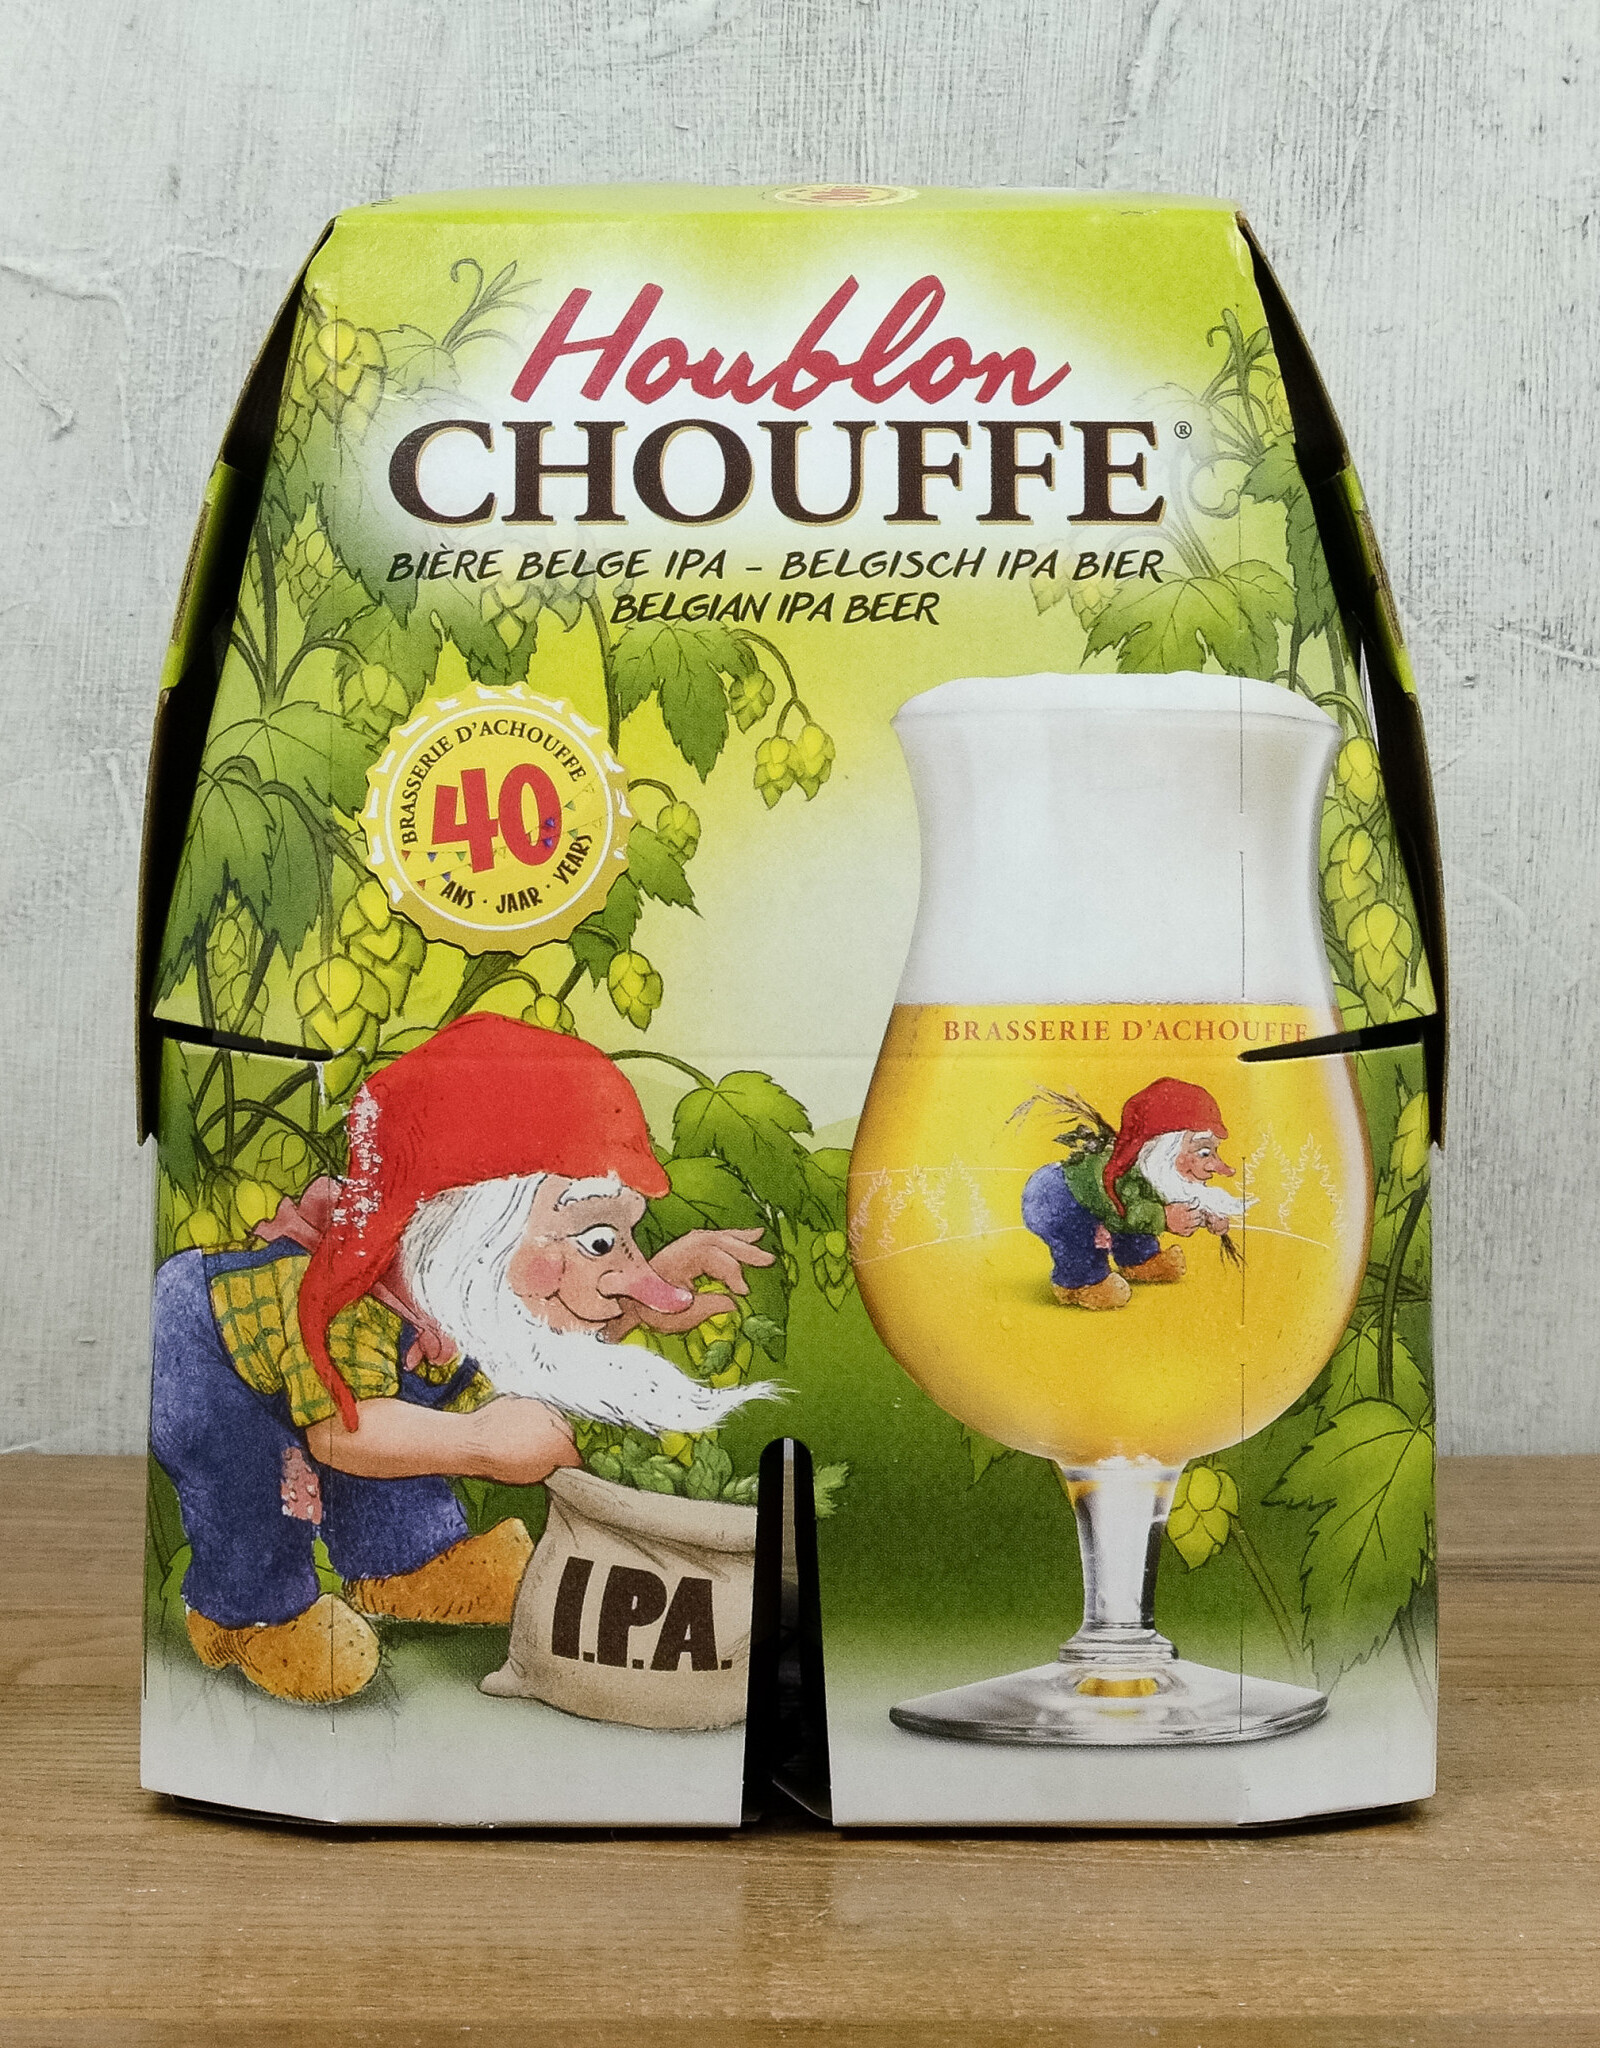 La Chouffe Houblon IPA